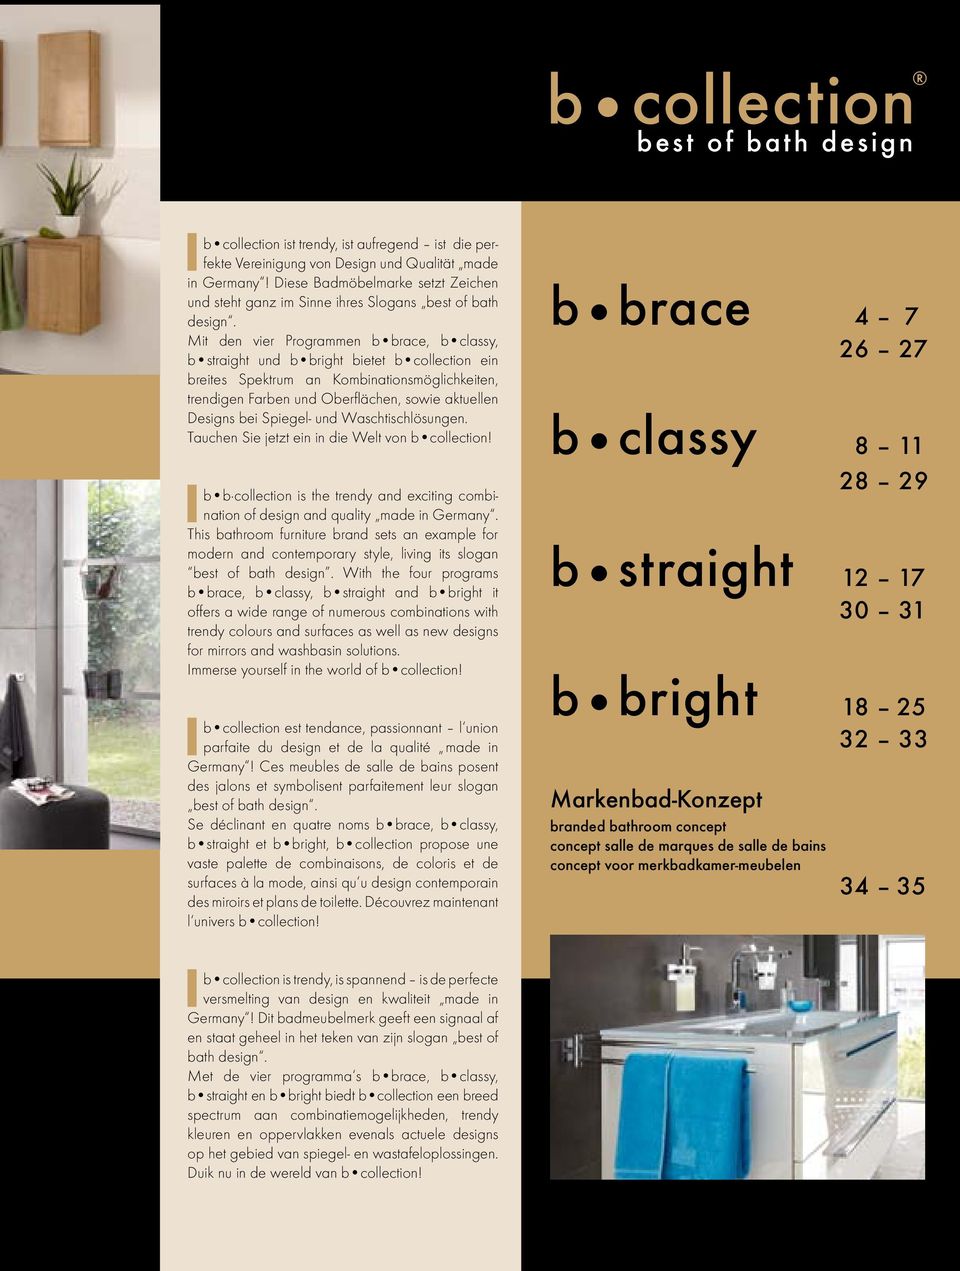 Mit den vier Programmen b brace, b classy, b straight und b bright bietet b collection ein breites Spektrum an Kombinationsmöglichkeiten, trendigen Farben und Oberflächen, sowie aktuellen Designs bei